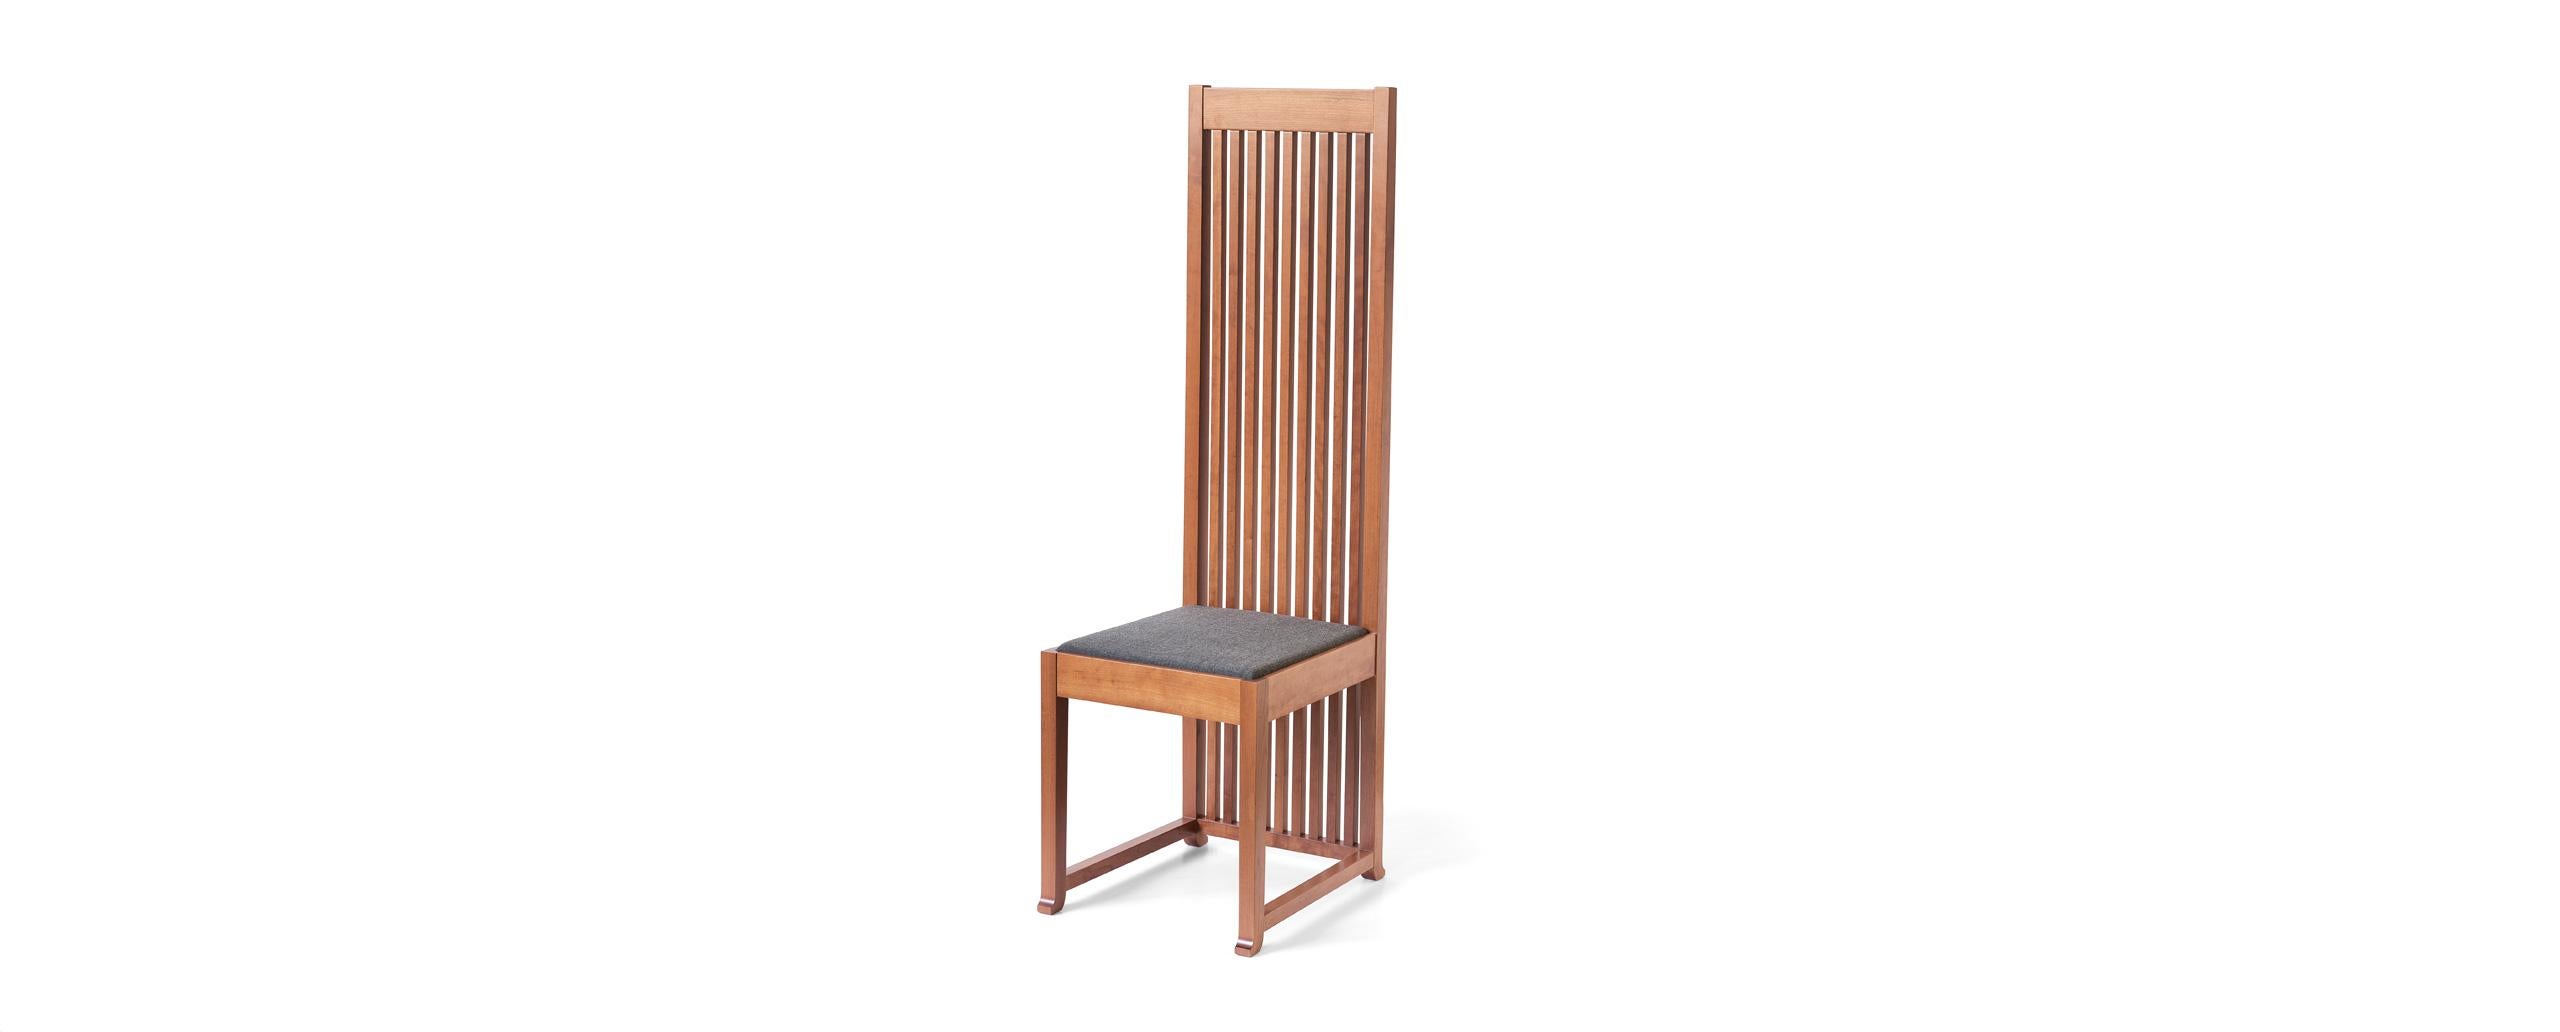 Italian Frank Lloyd Wrigh Robie Chair by Cassina